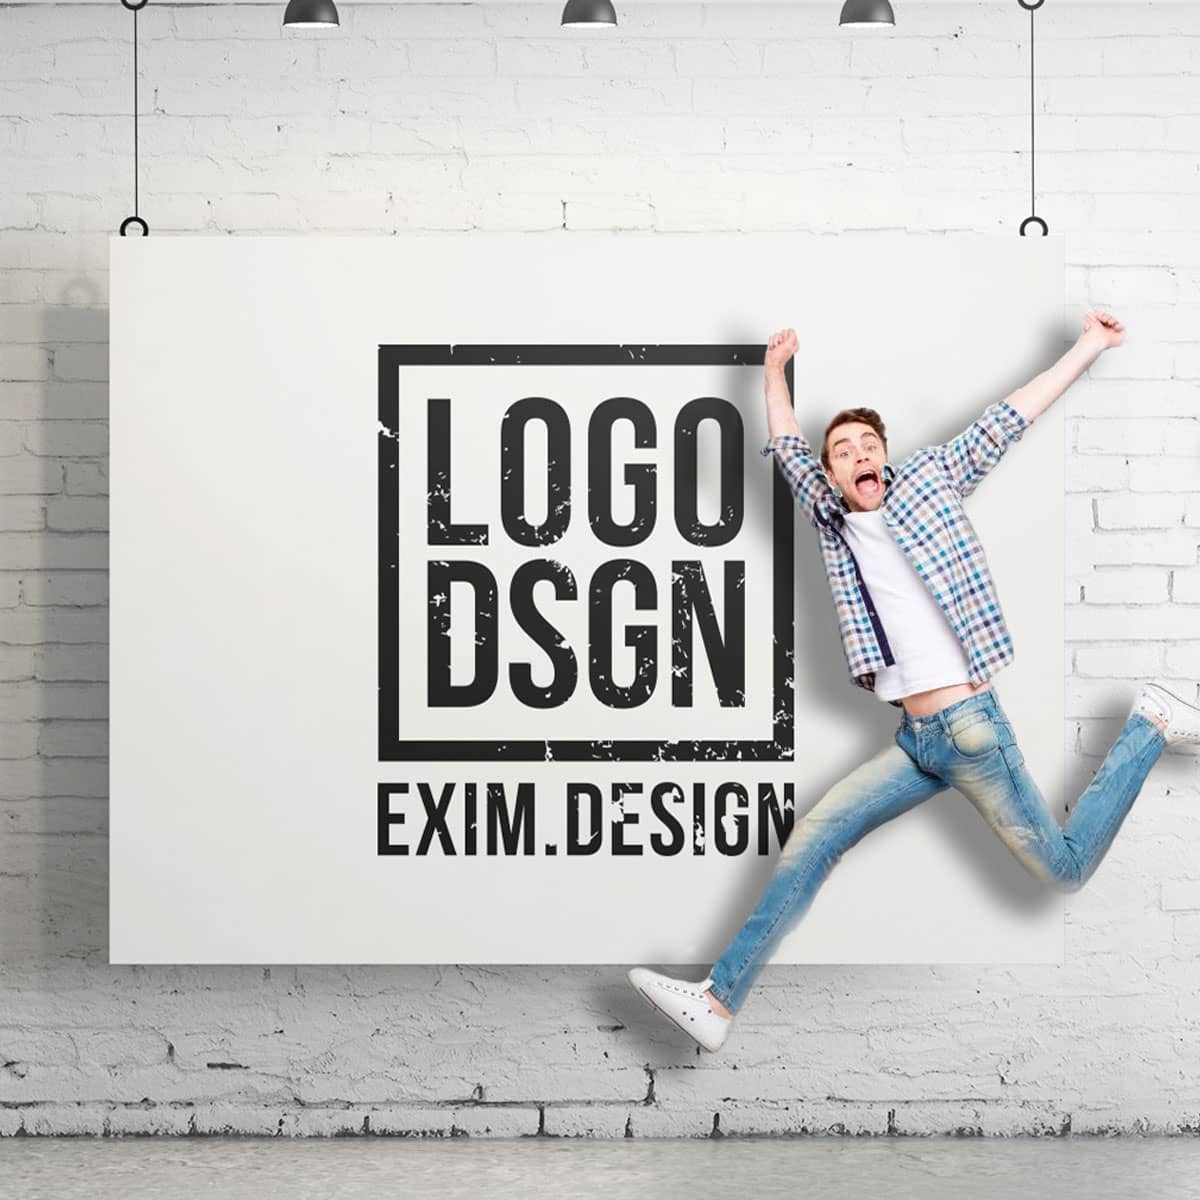 (c) Eximdesign.com